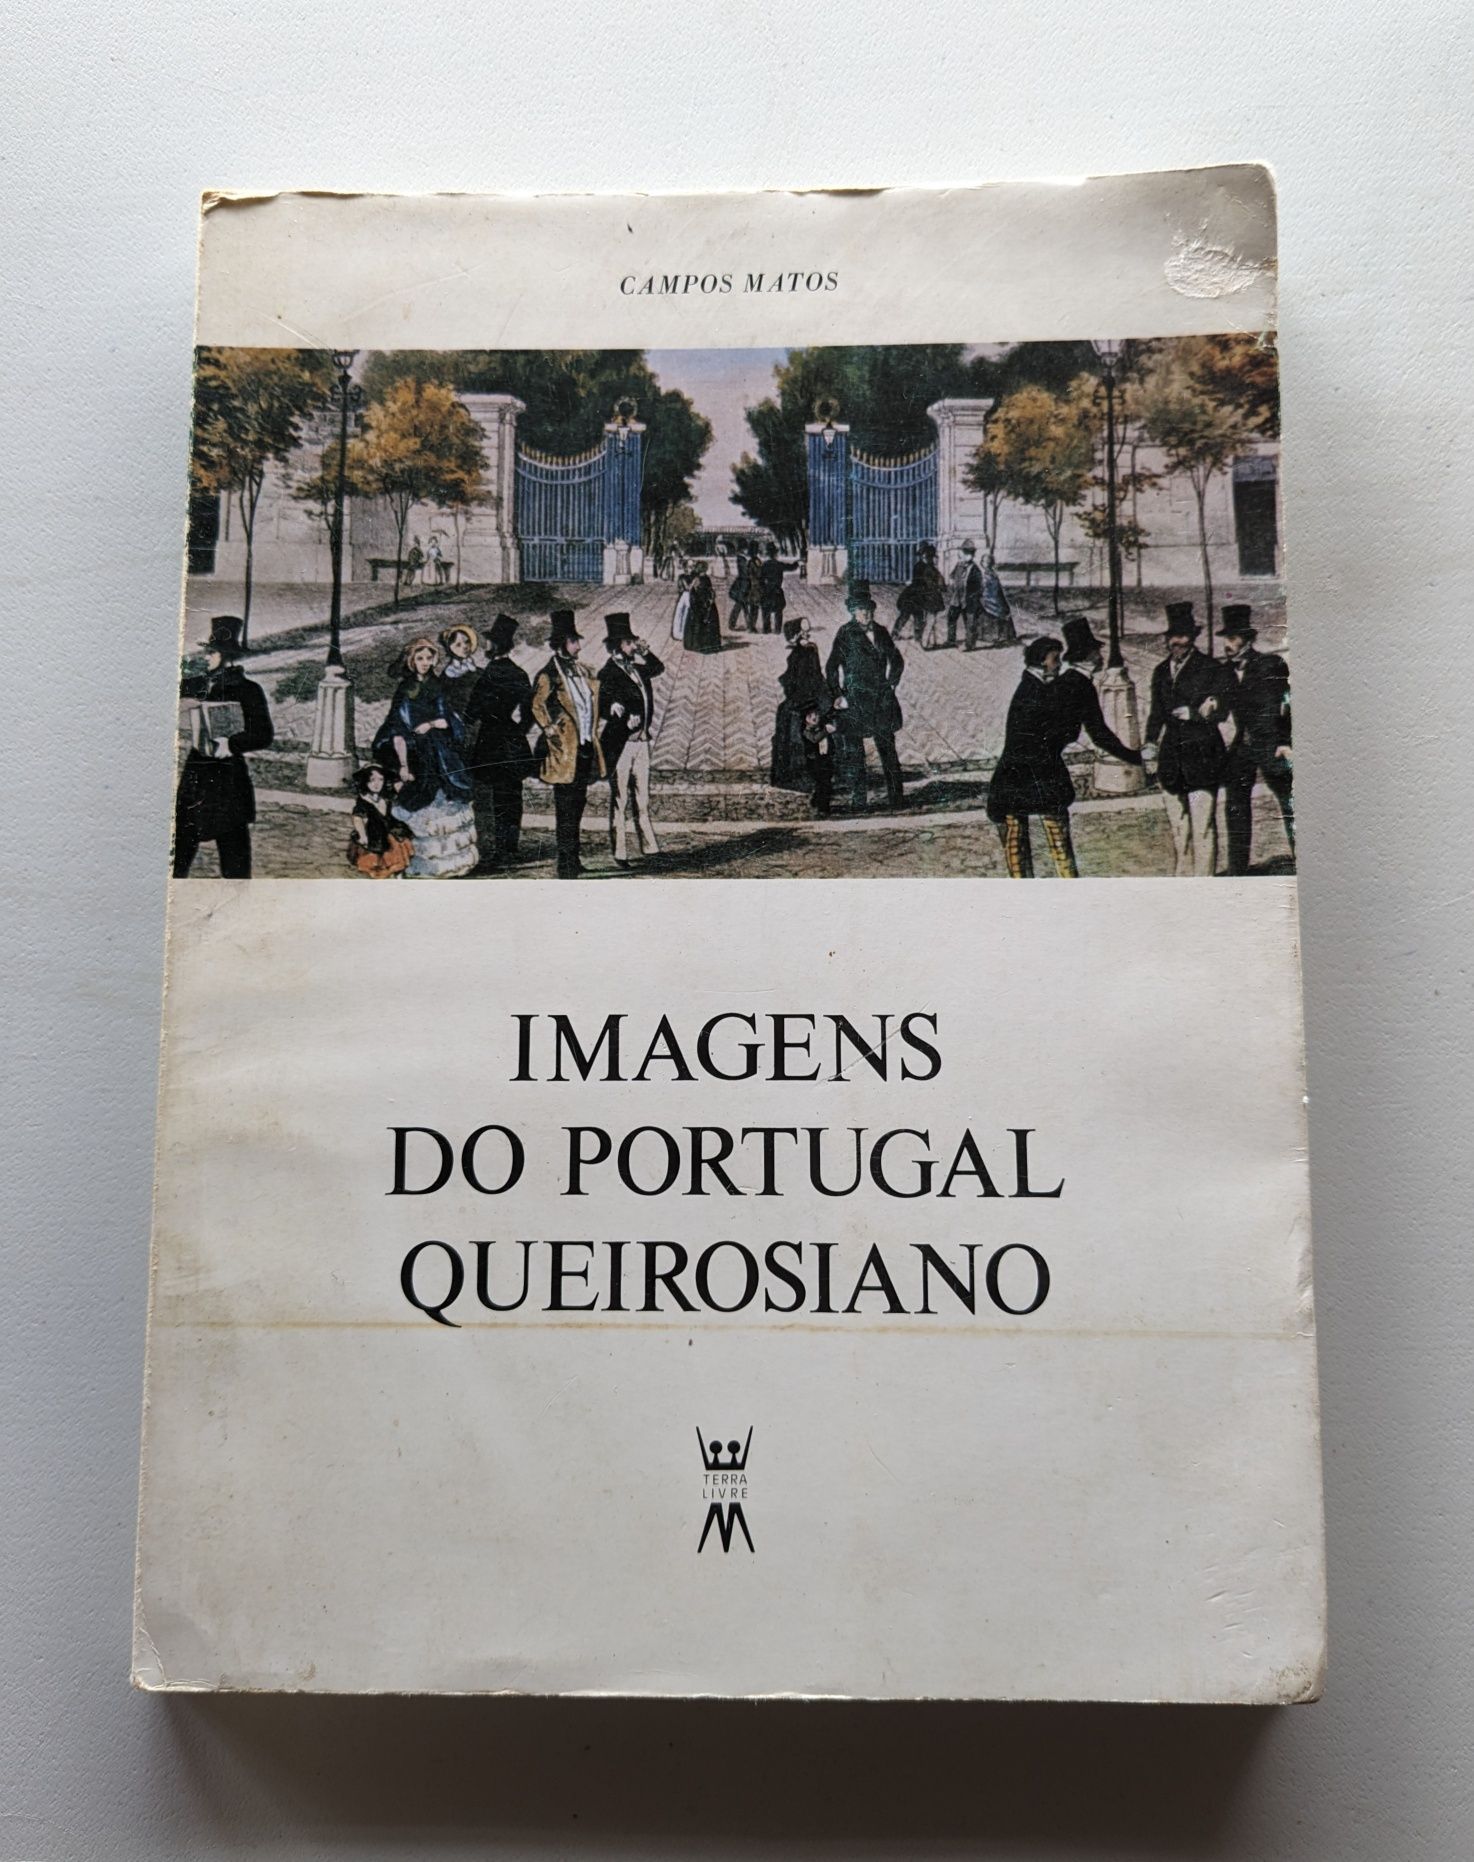 Cultura Portuguesa e Autores Portugueses